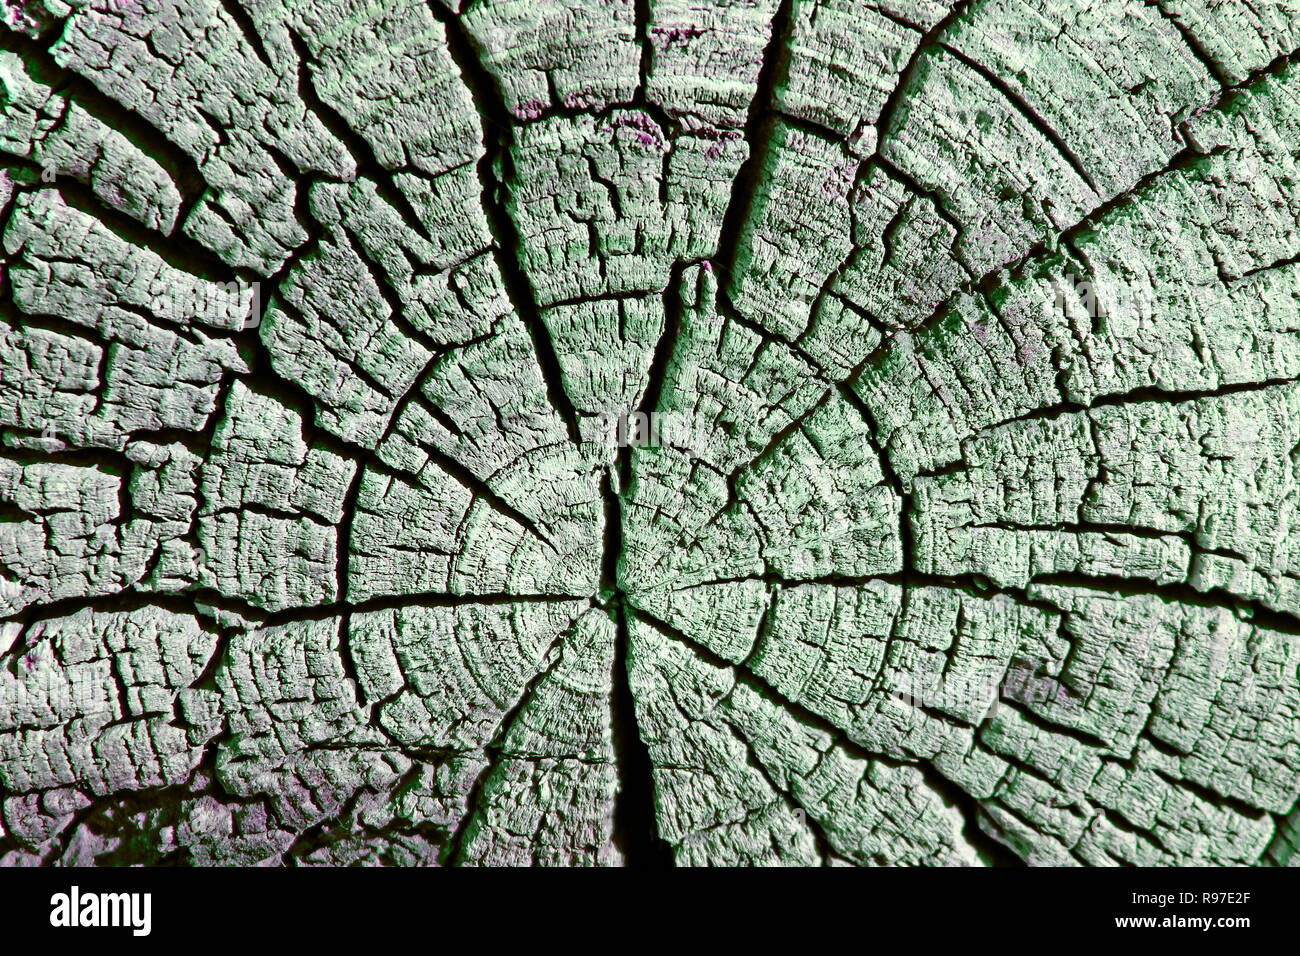 La textura de madera vieja con patrones naturales. Sección transversal del árbol viejo. La textura de madera oscura. fondo natural plantilla vacía. Foto de stock